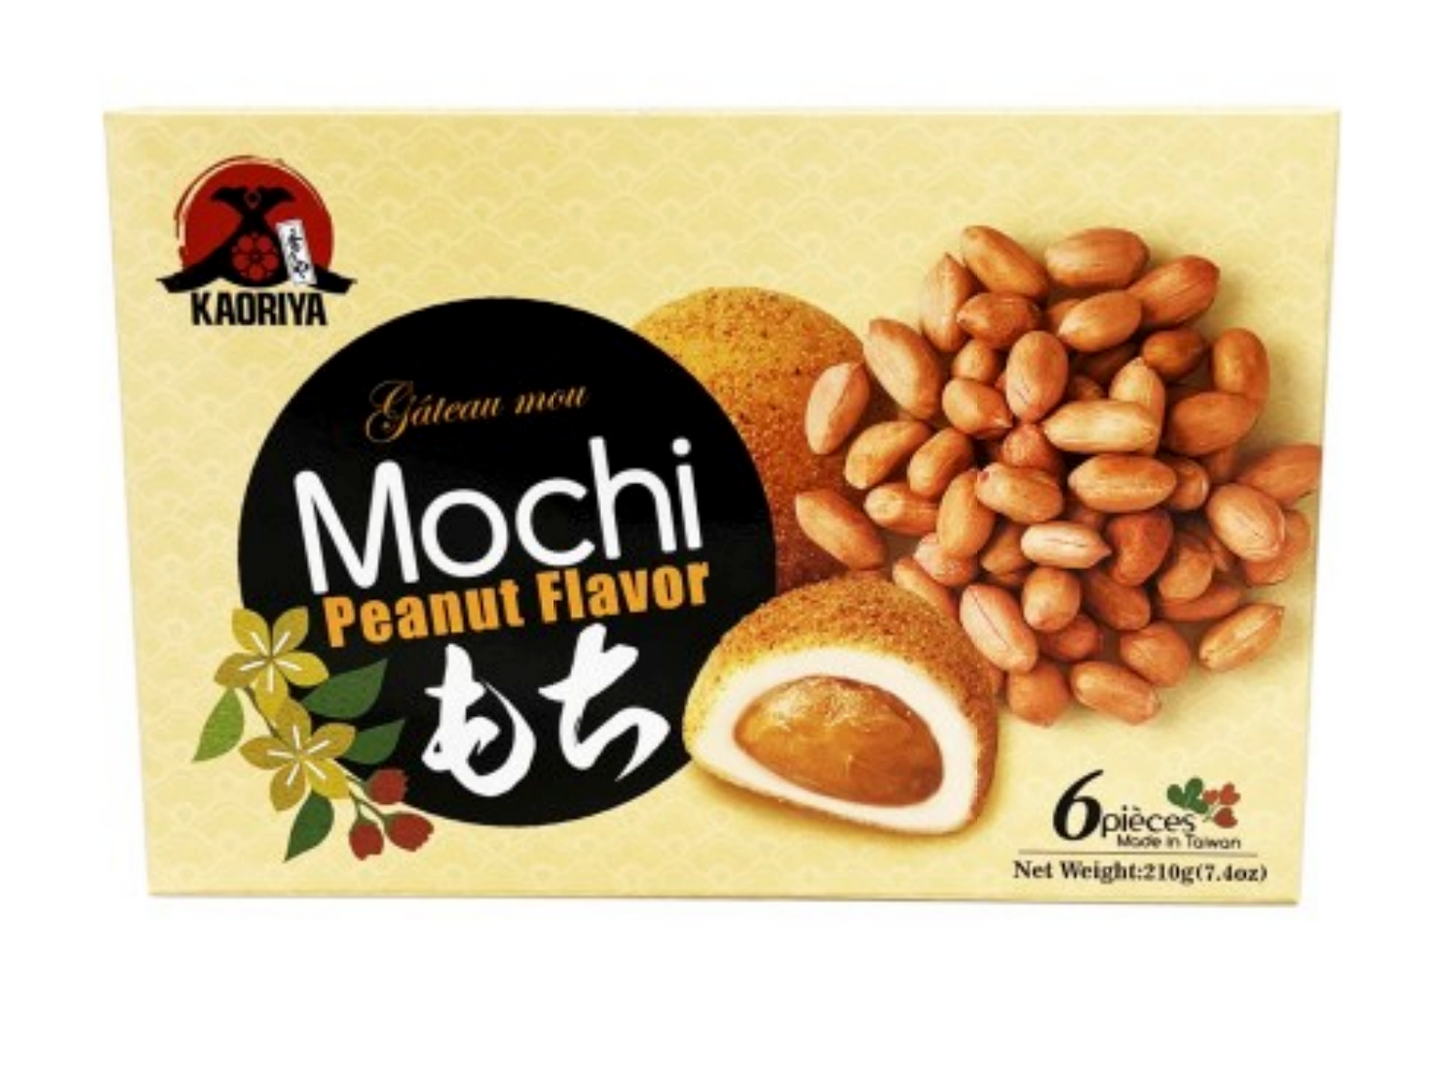 Mochi Fruity - Royal Family - Mochi Bubble tea lait - Cacahuète - Citron - Mange - Melon - Fraise - Pêche - Myrtille